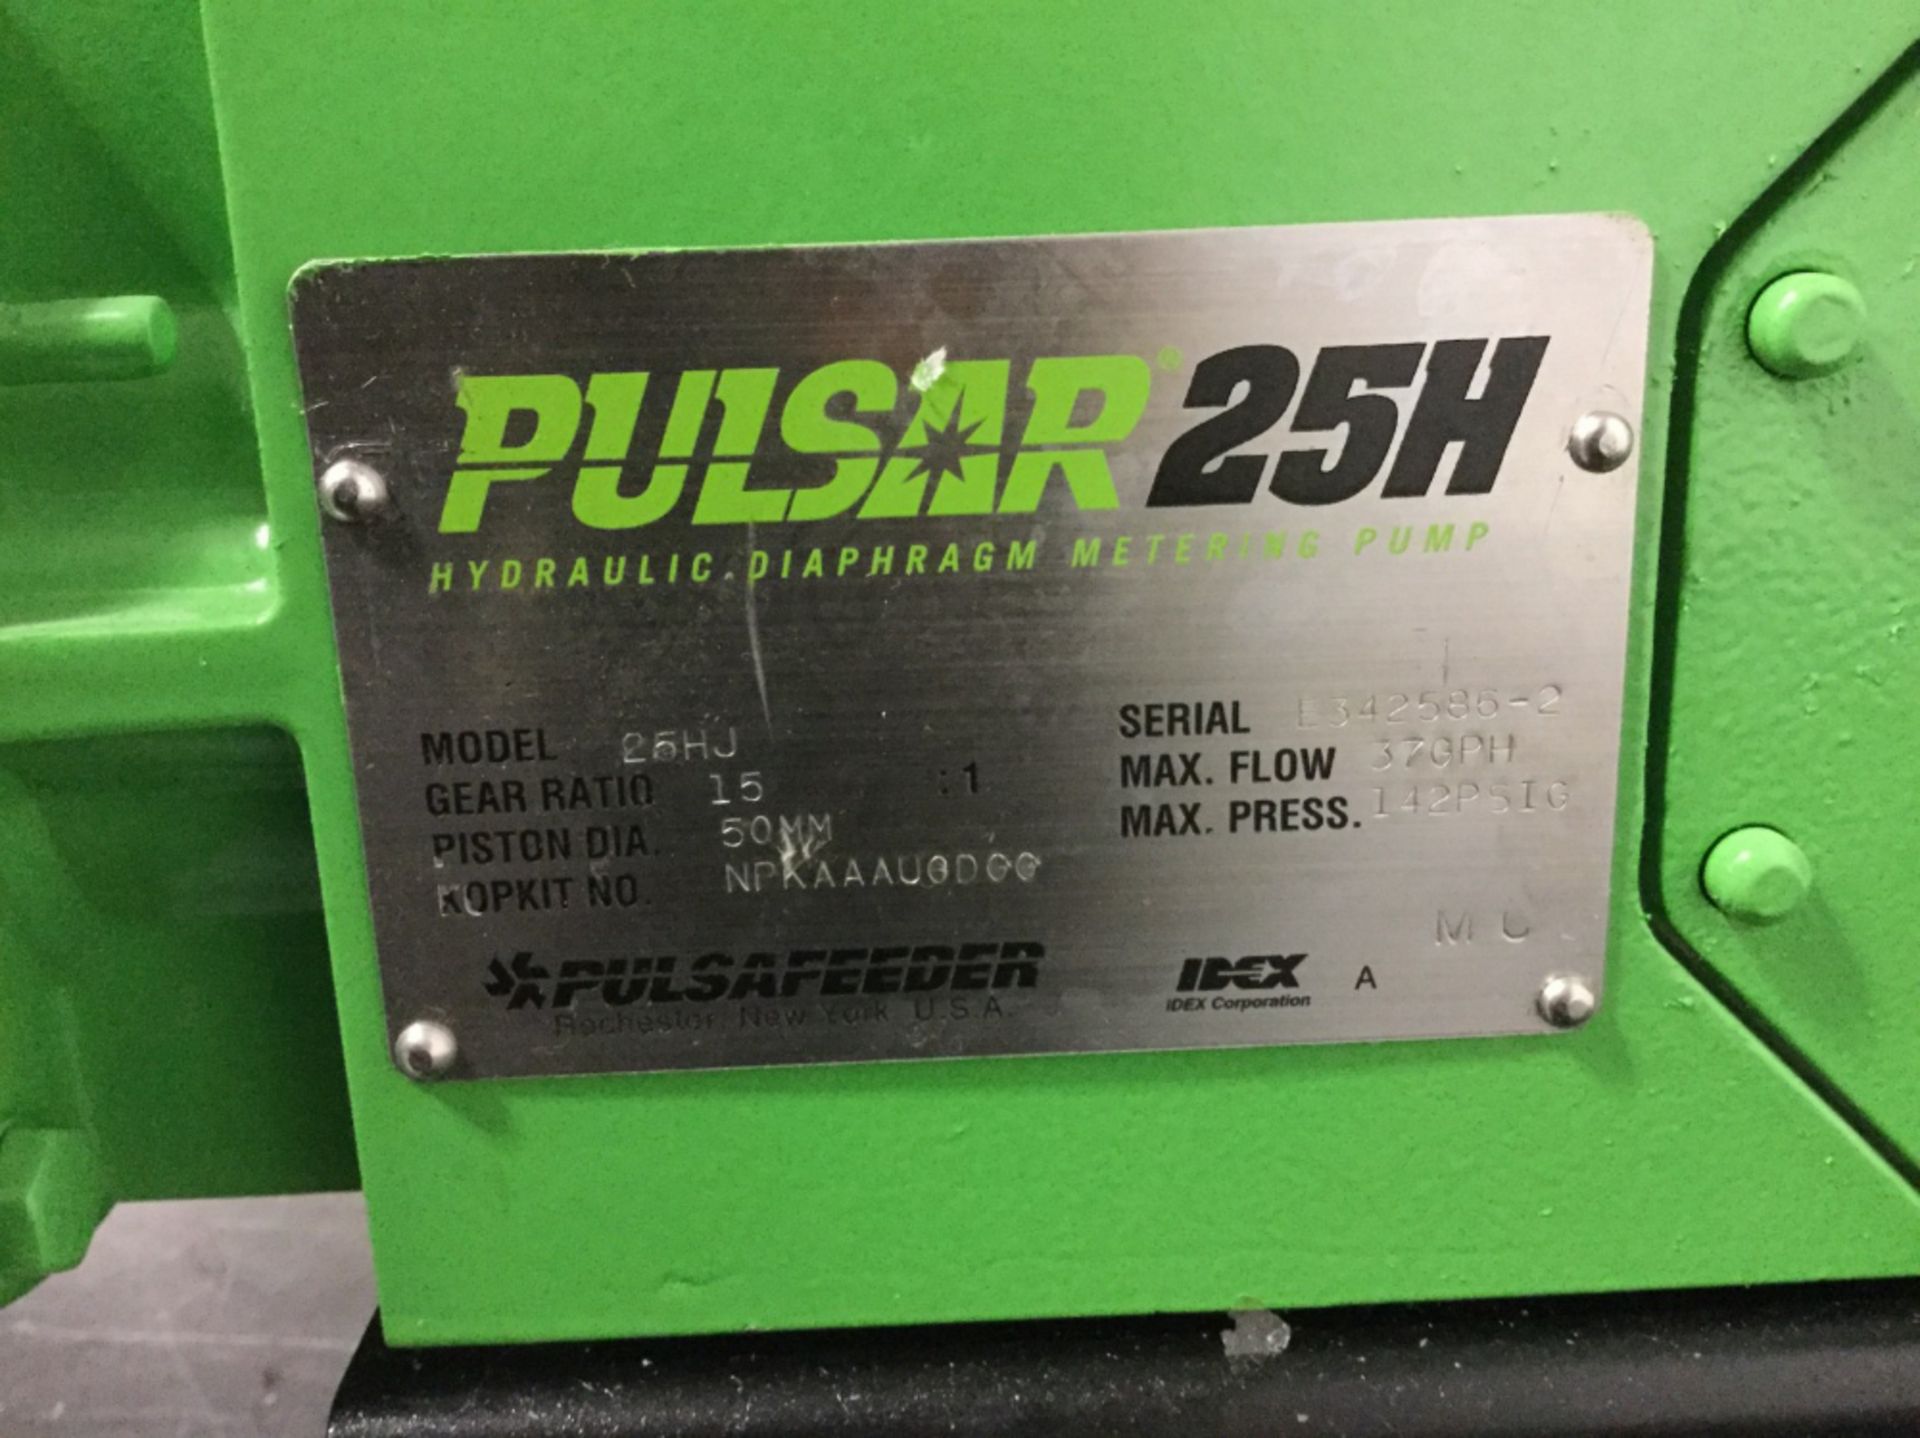 Pulsafeeder Pulsar 25H Hydraulic Diaphragm Metering Pump - Image 2 of 2